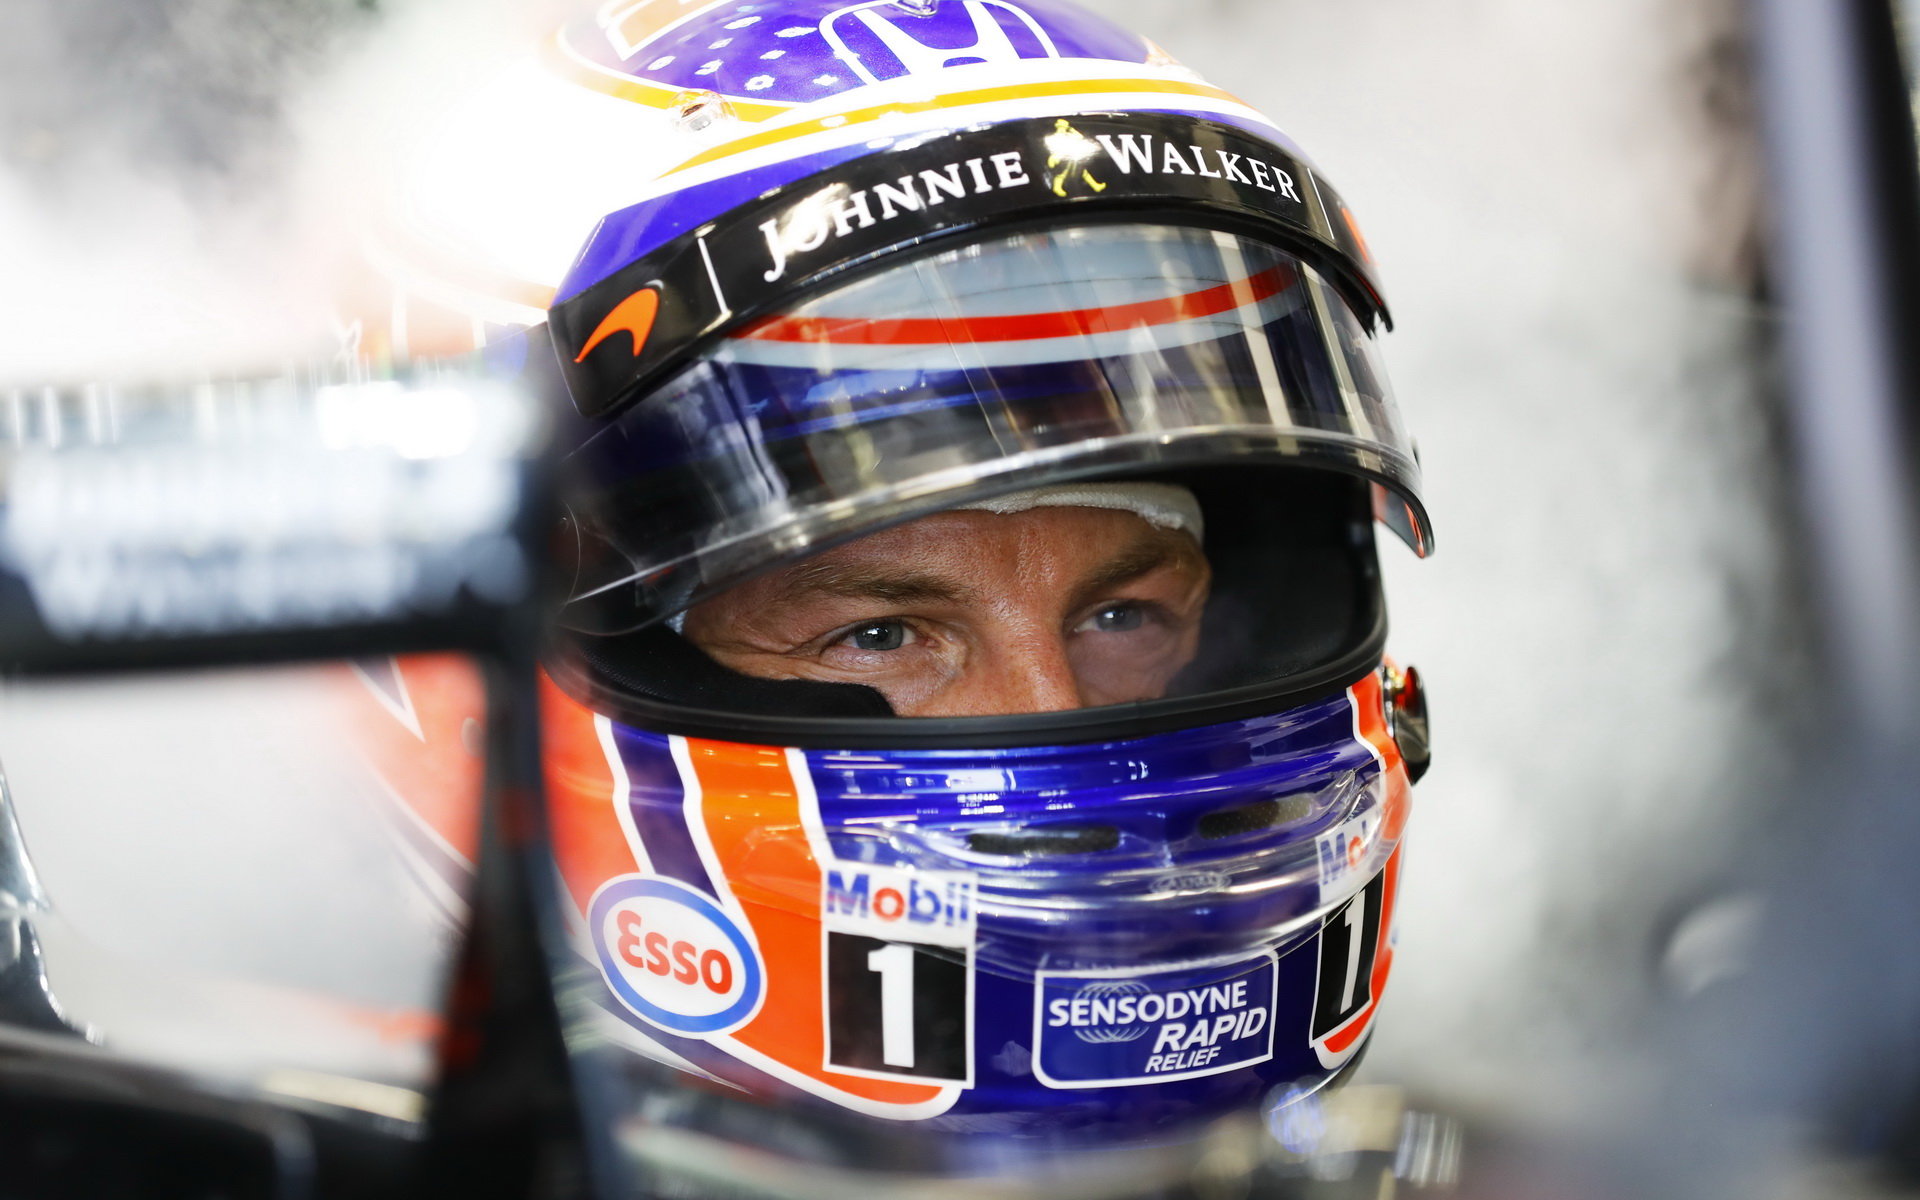 Jenson Button v kvalifikaci v Singapuru